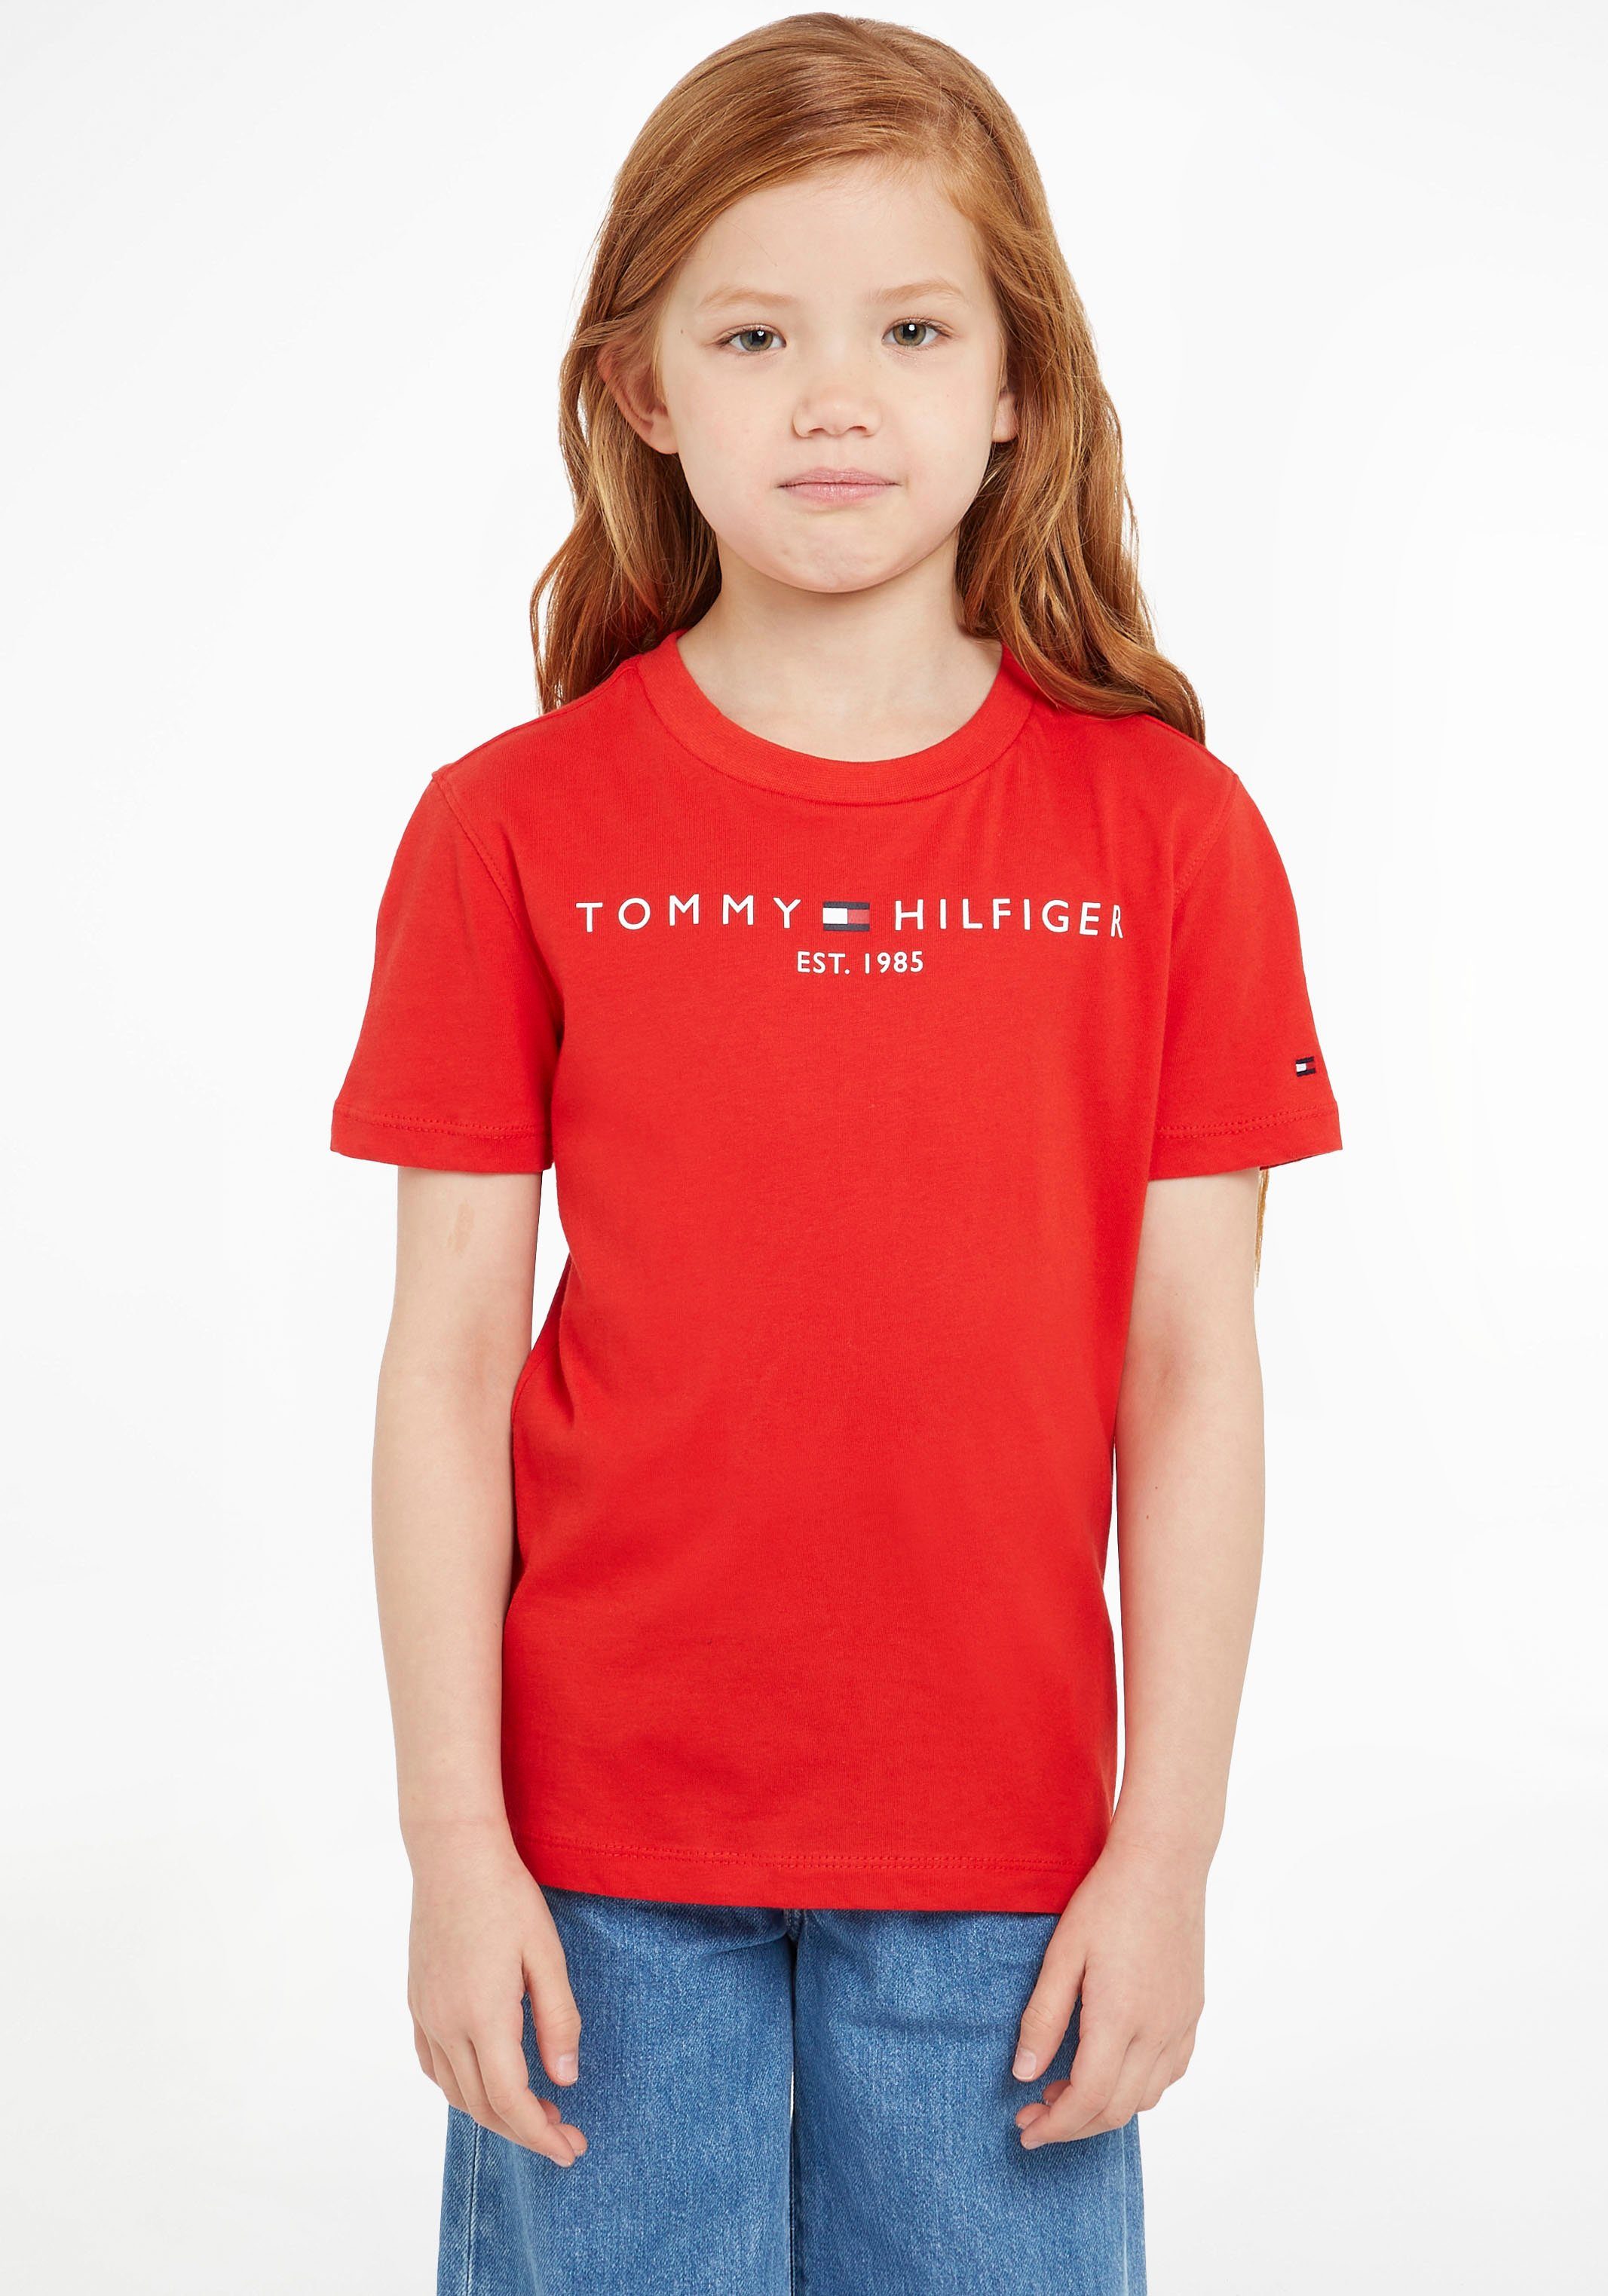 Tommy Hilfiger T-Shirt TEE MiniMe,für ESSENTIAL und Kinder Junior Kids Mädchen Jungen